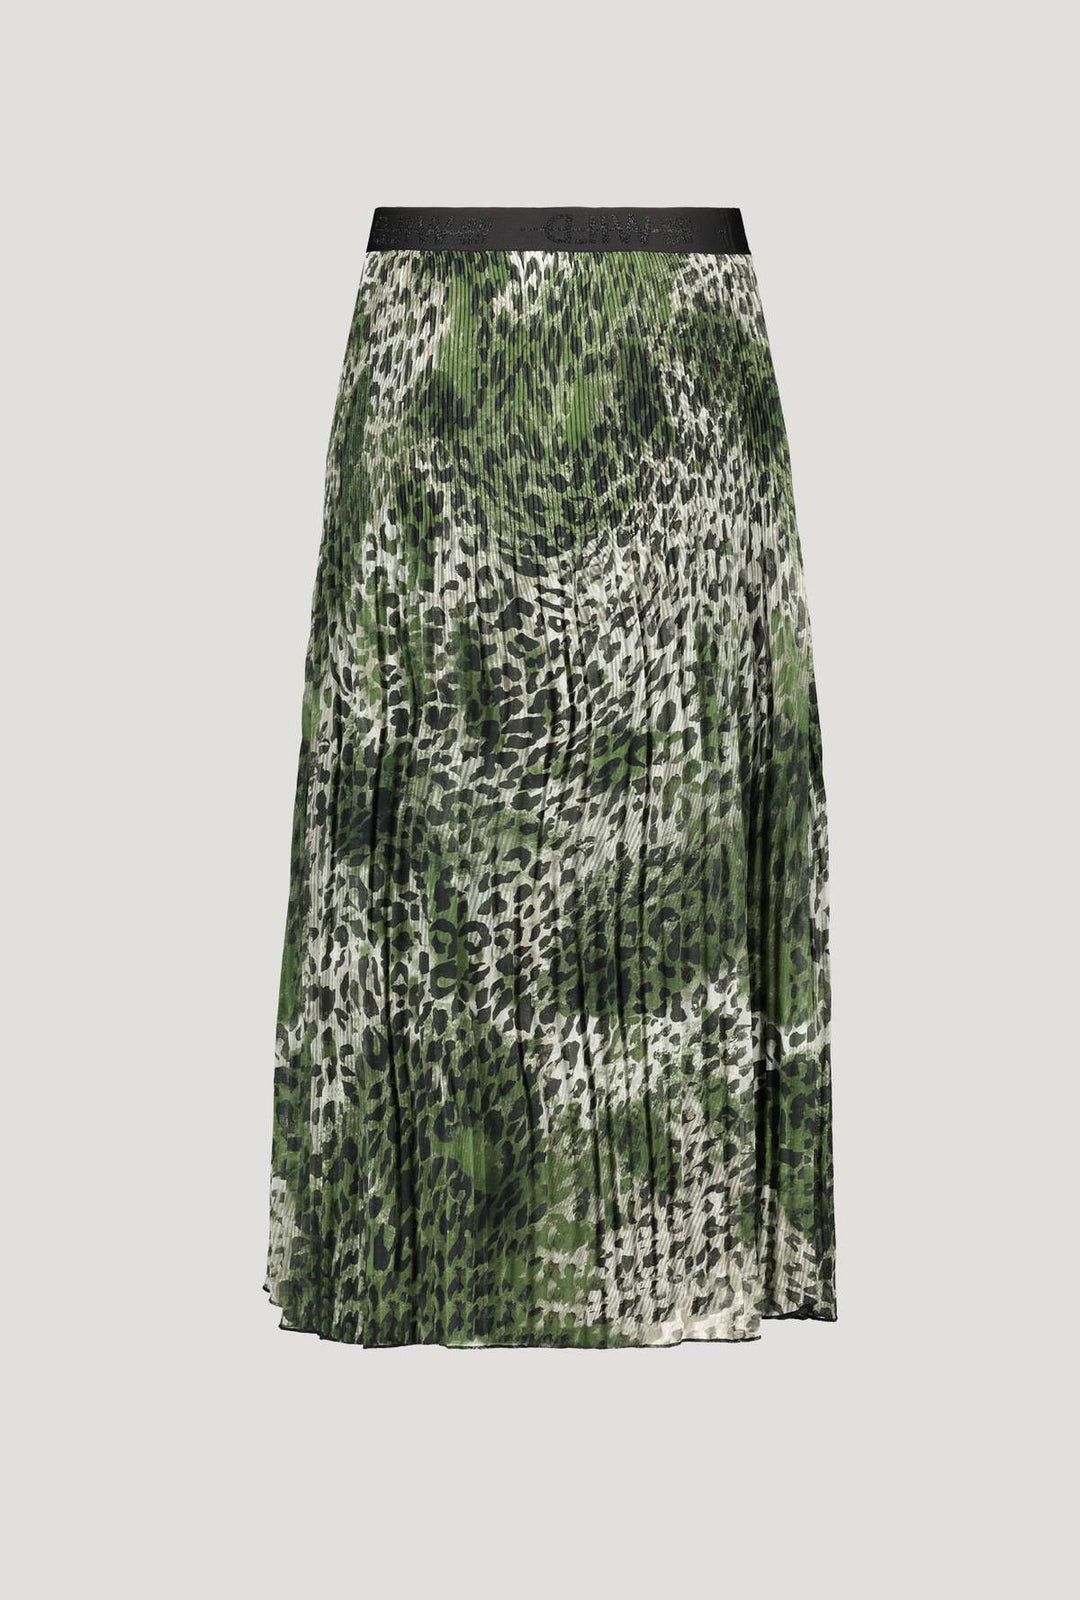 Monari 406265 Clover Pattern Skirt Back | Dotique